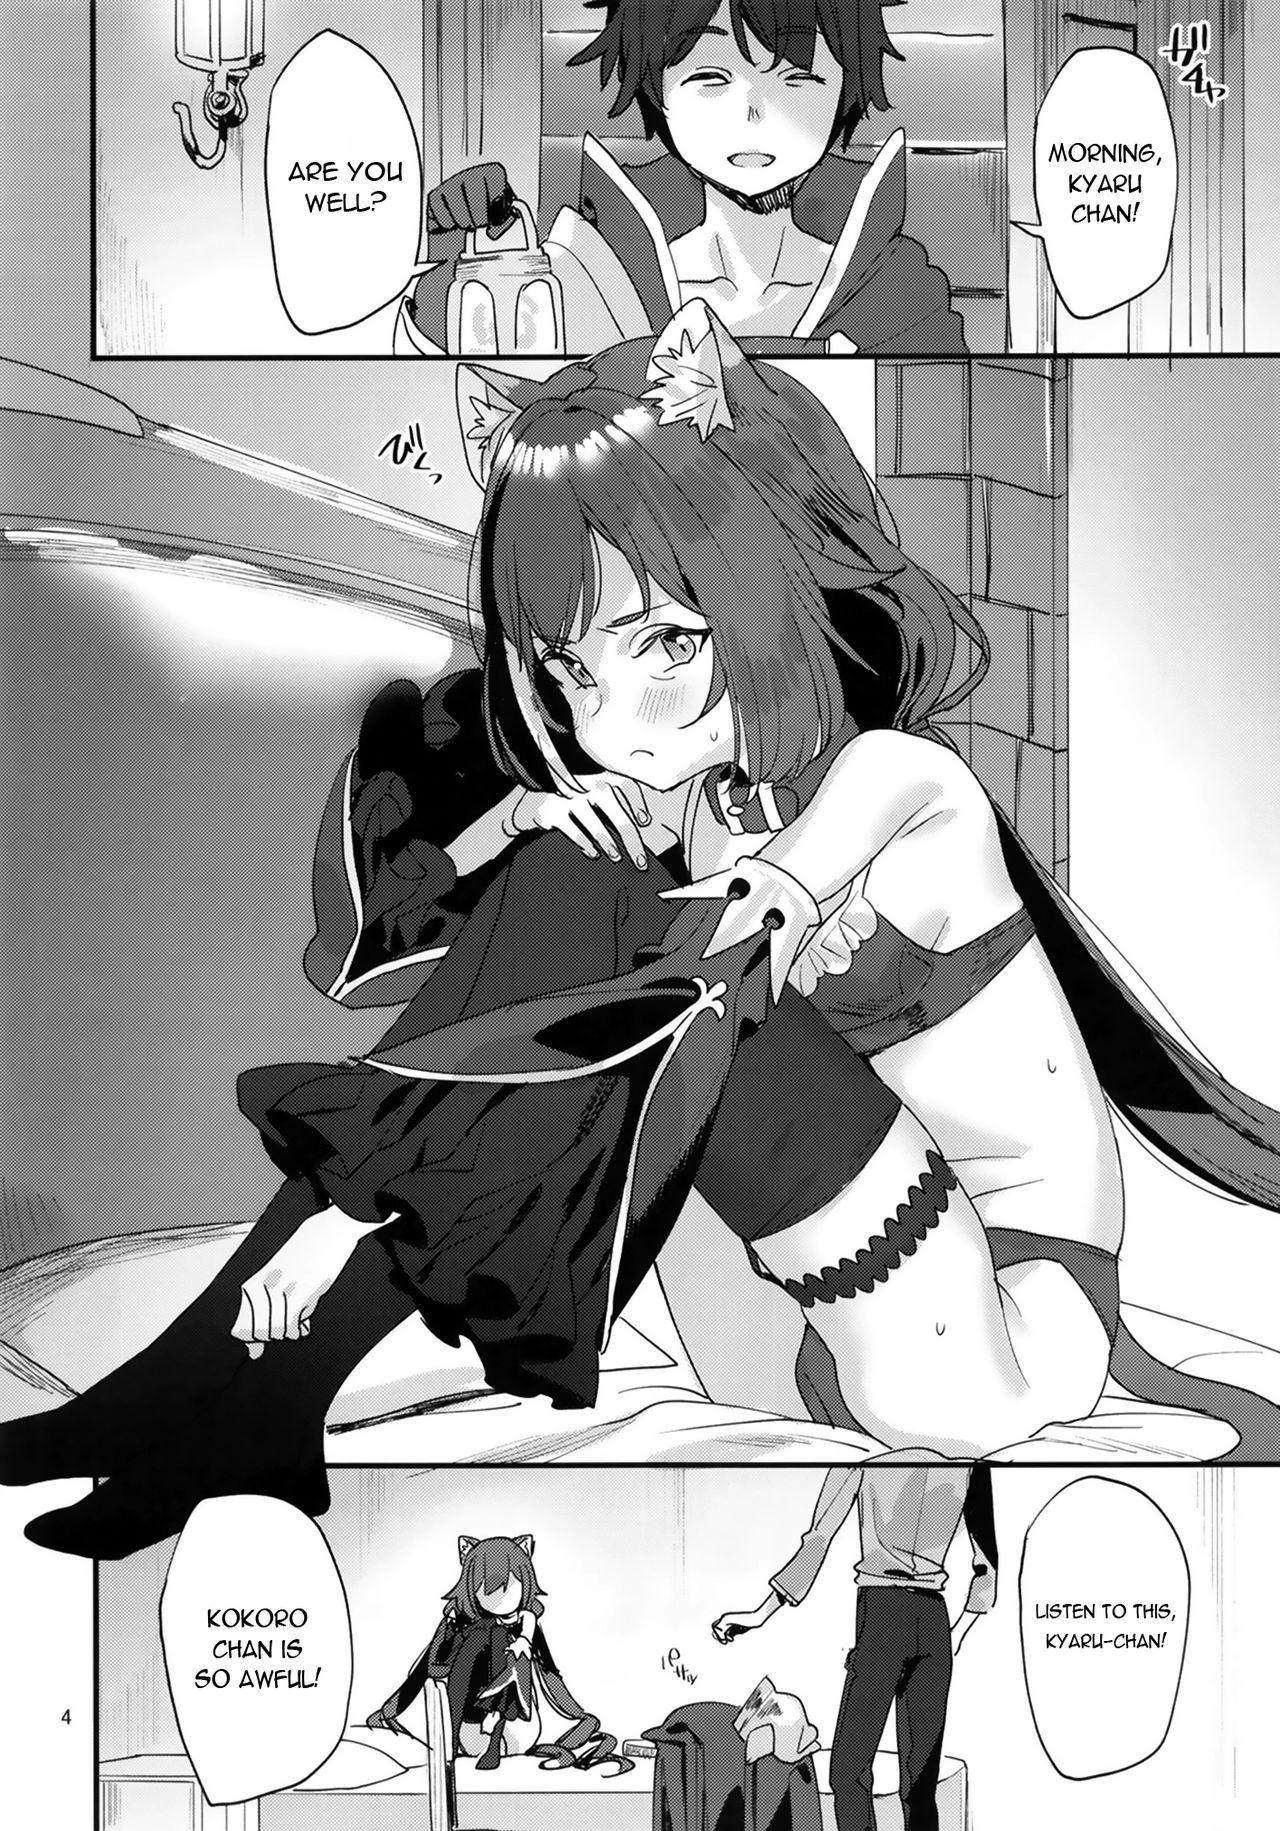 Bizarre Ohayou, Kyaru-chan - Princess connect Gays - Page 4